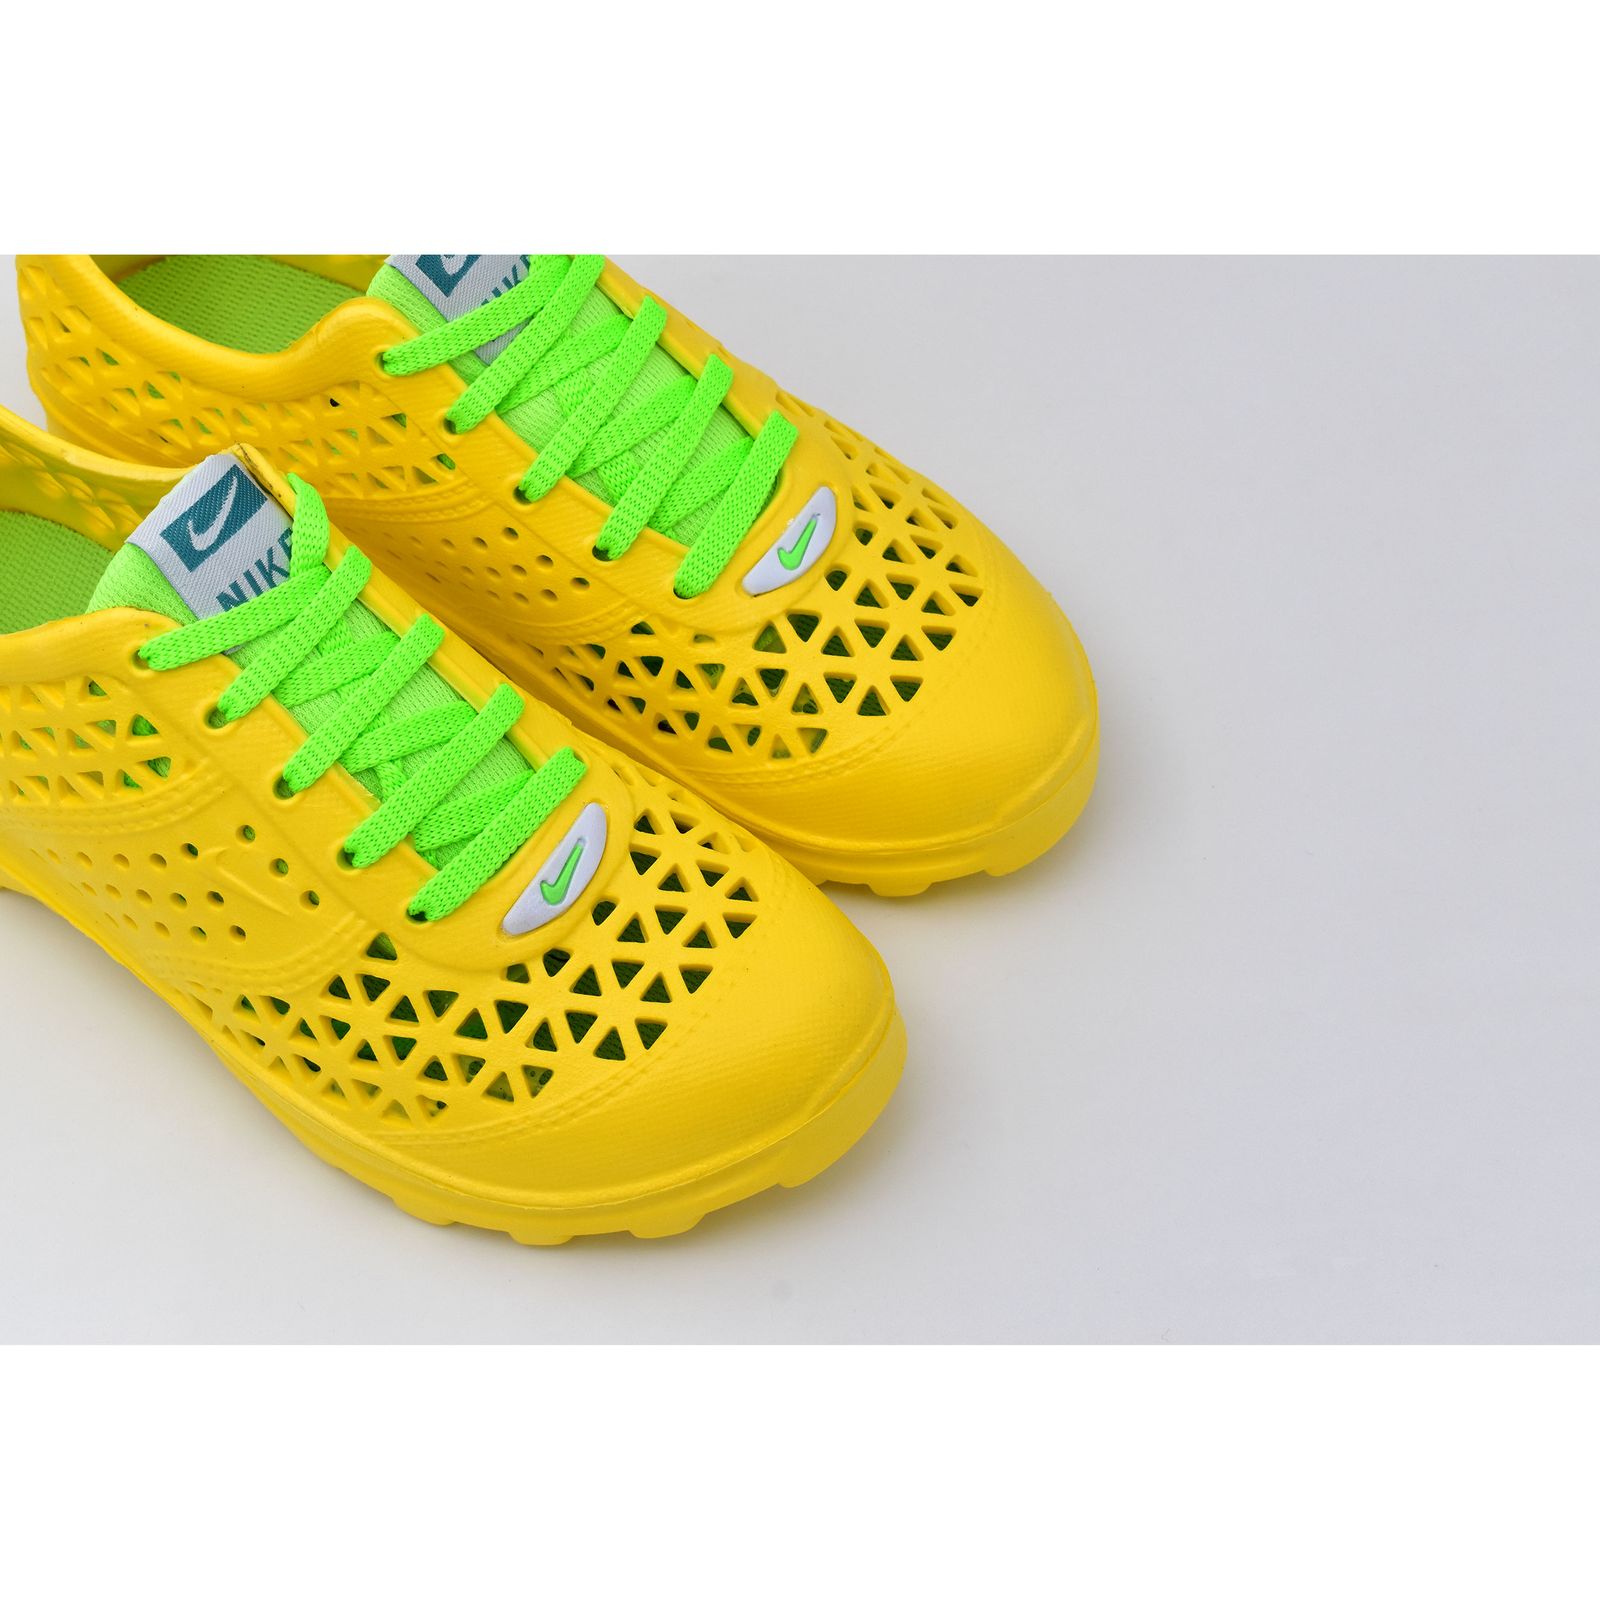  کفش ورزش های آبی زنانه نسیم مدل مرجان کد 8715 -  - 3